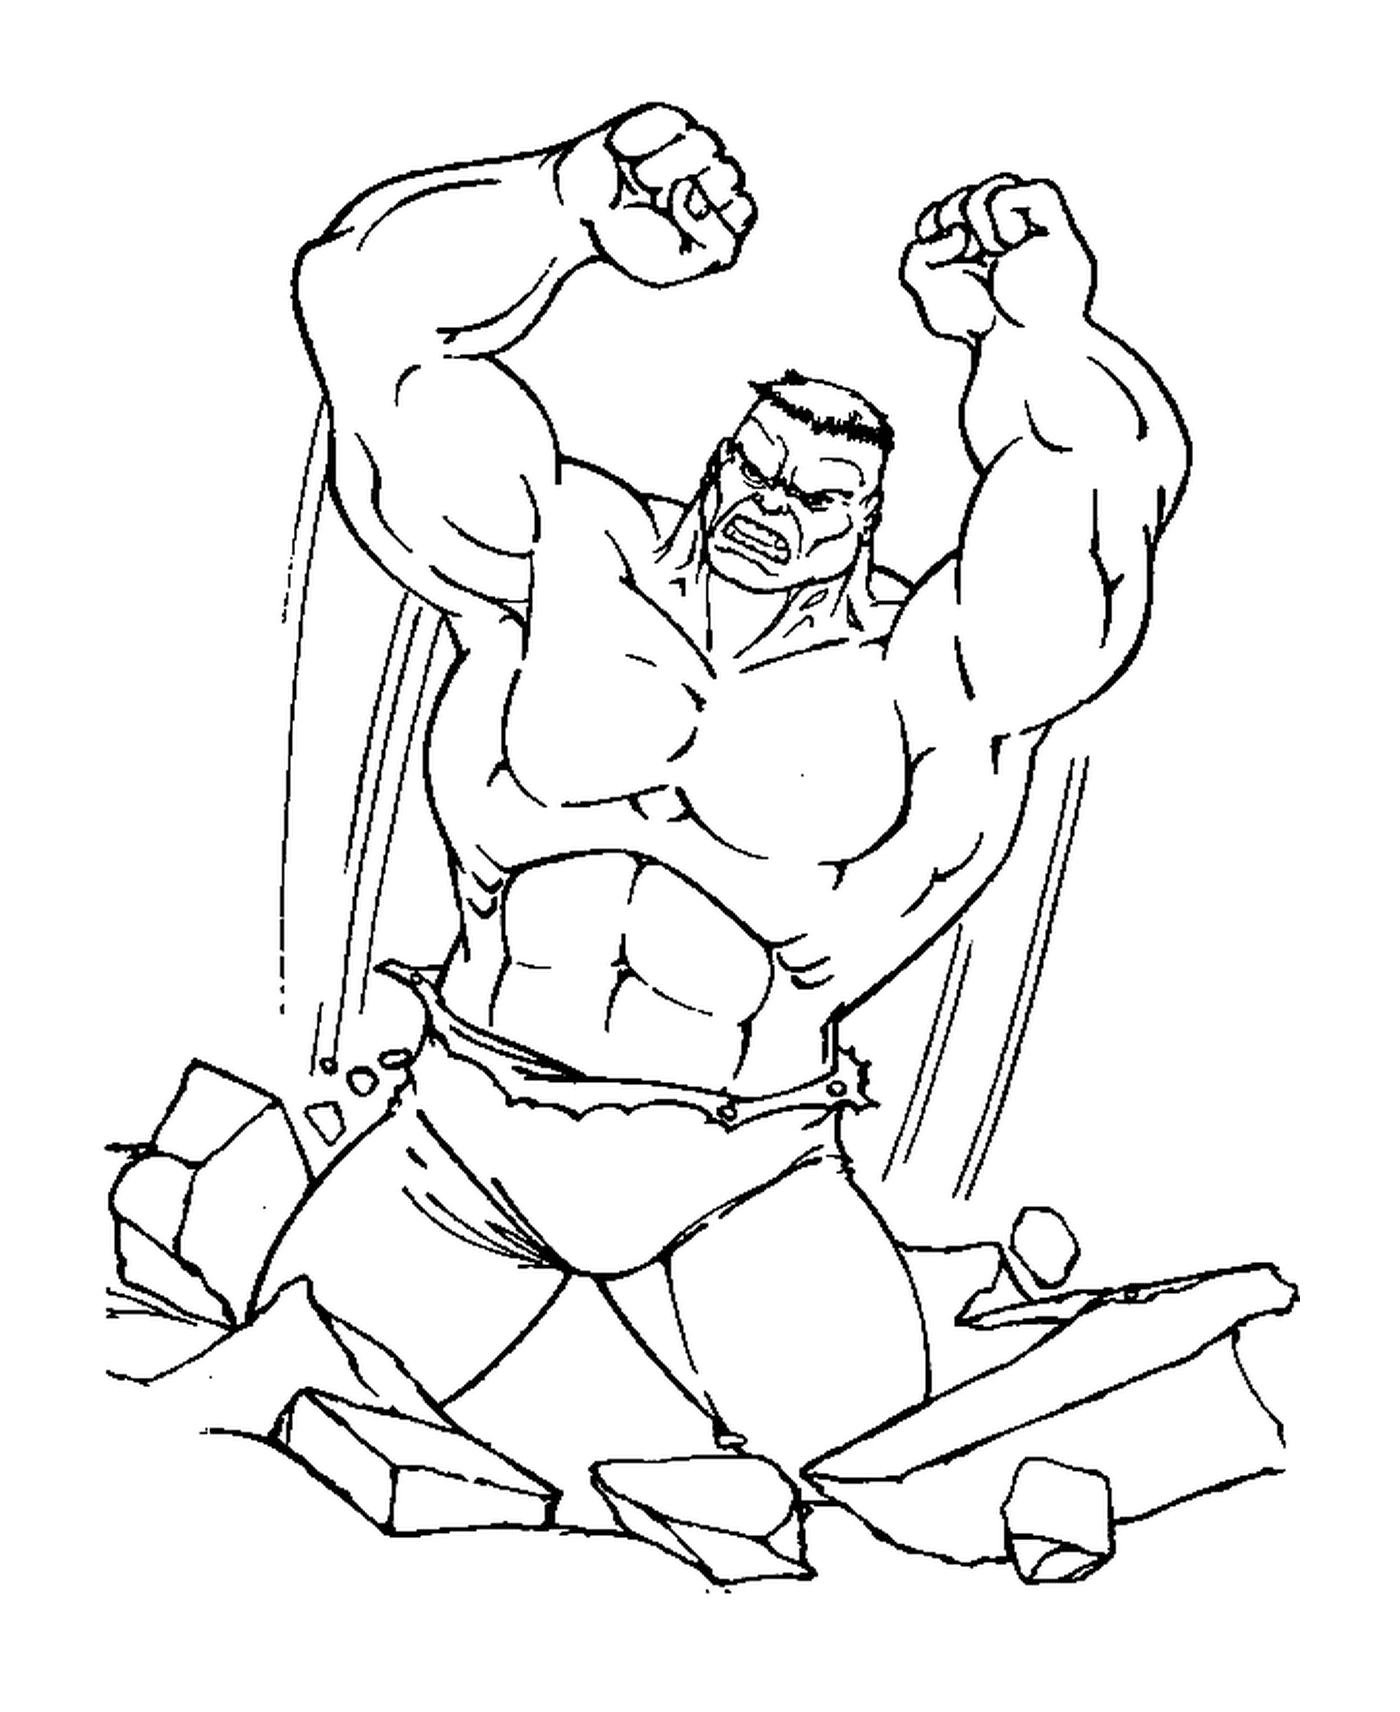  Hulk bricht eine Ziegelwand 